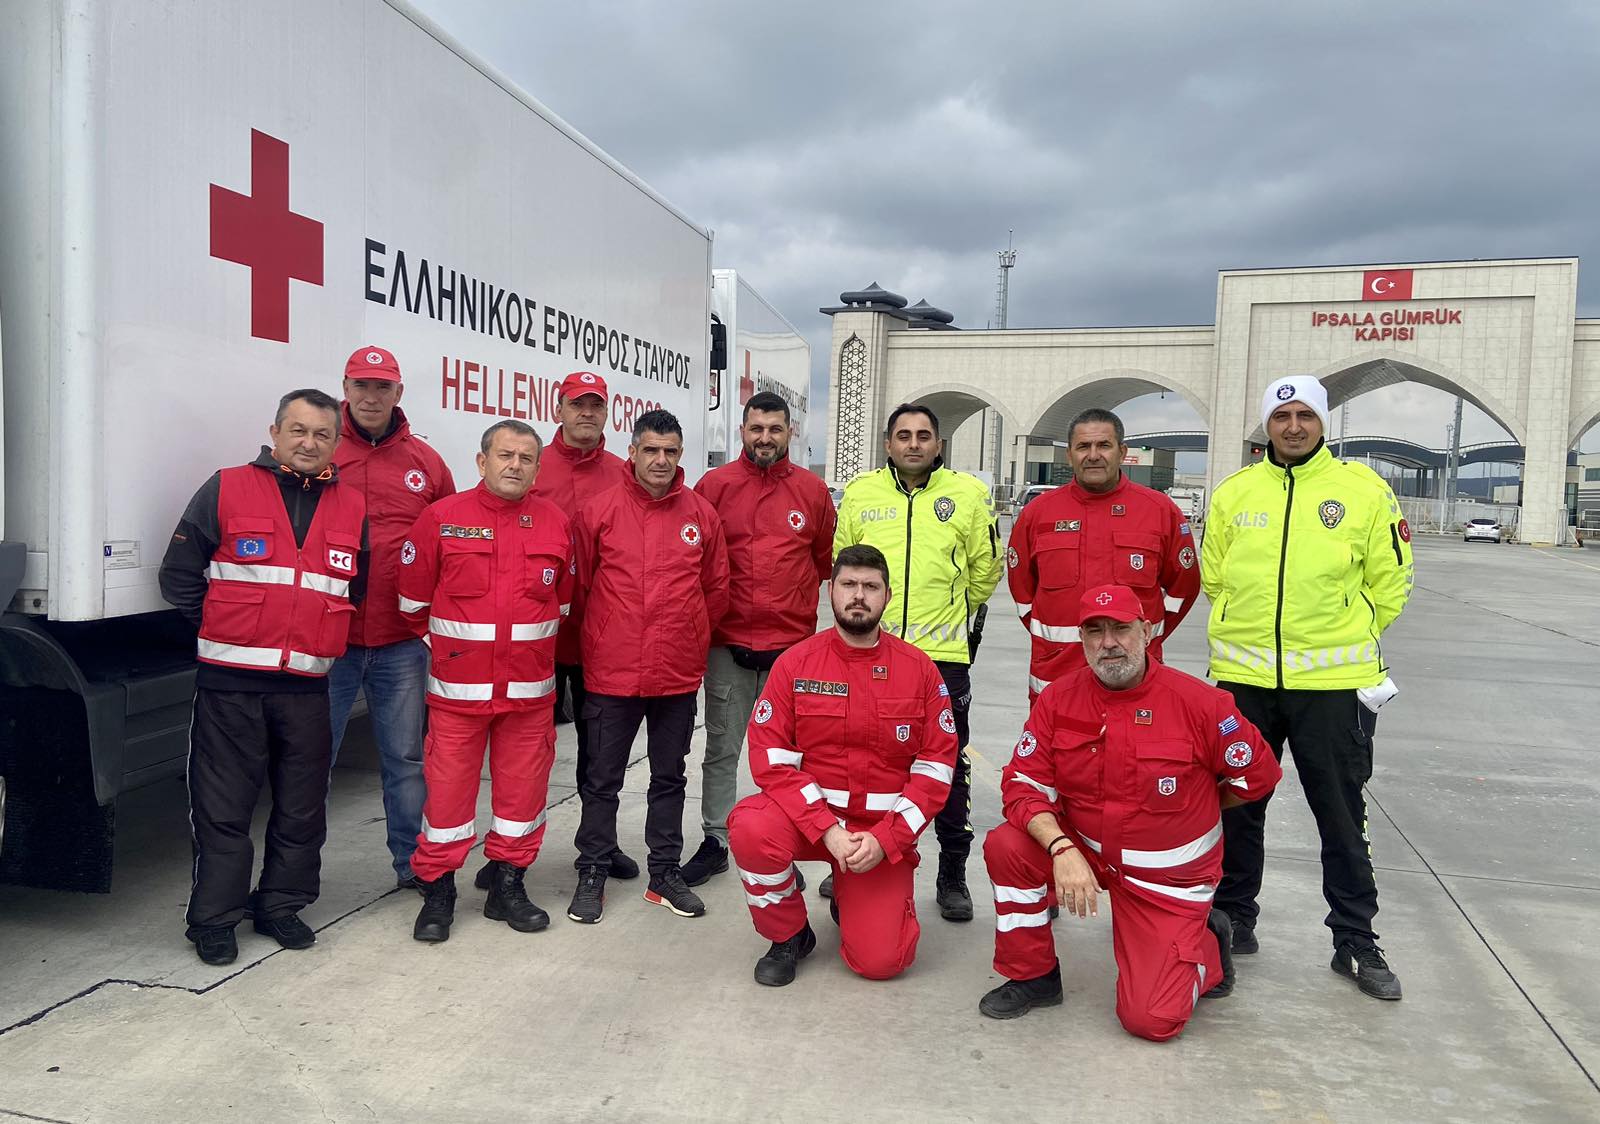 Χειροκροτήματα στην Τουρκία για τη δεύτερη ανθρωπιστική βοήθεια του Ελληνικού Ερυθρού Σταυρού στους σεισμόπληκτους